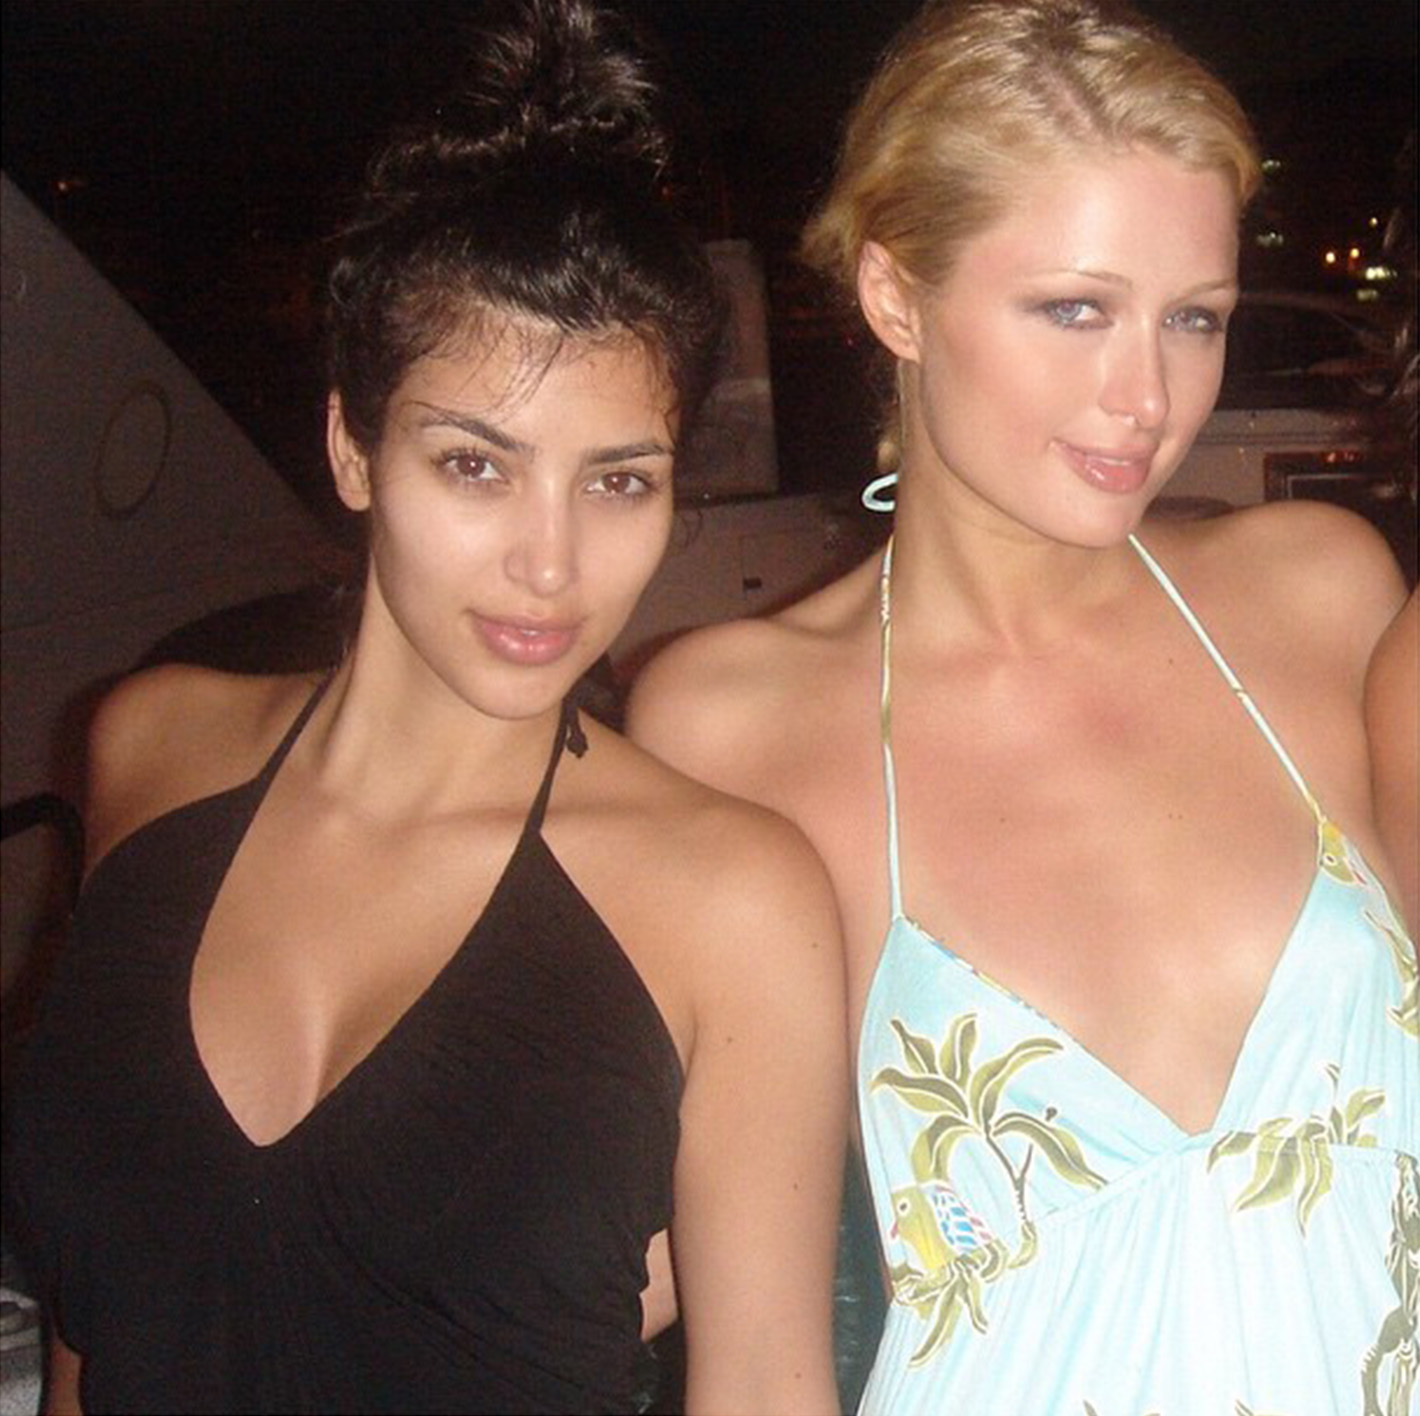 A Look at Paris Hilton and Kim Kardashian's Friendship Through the Years